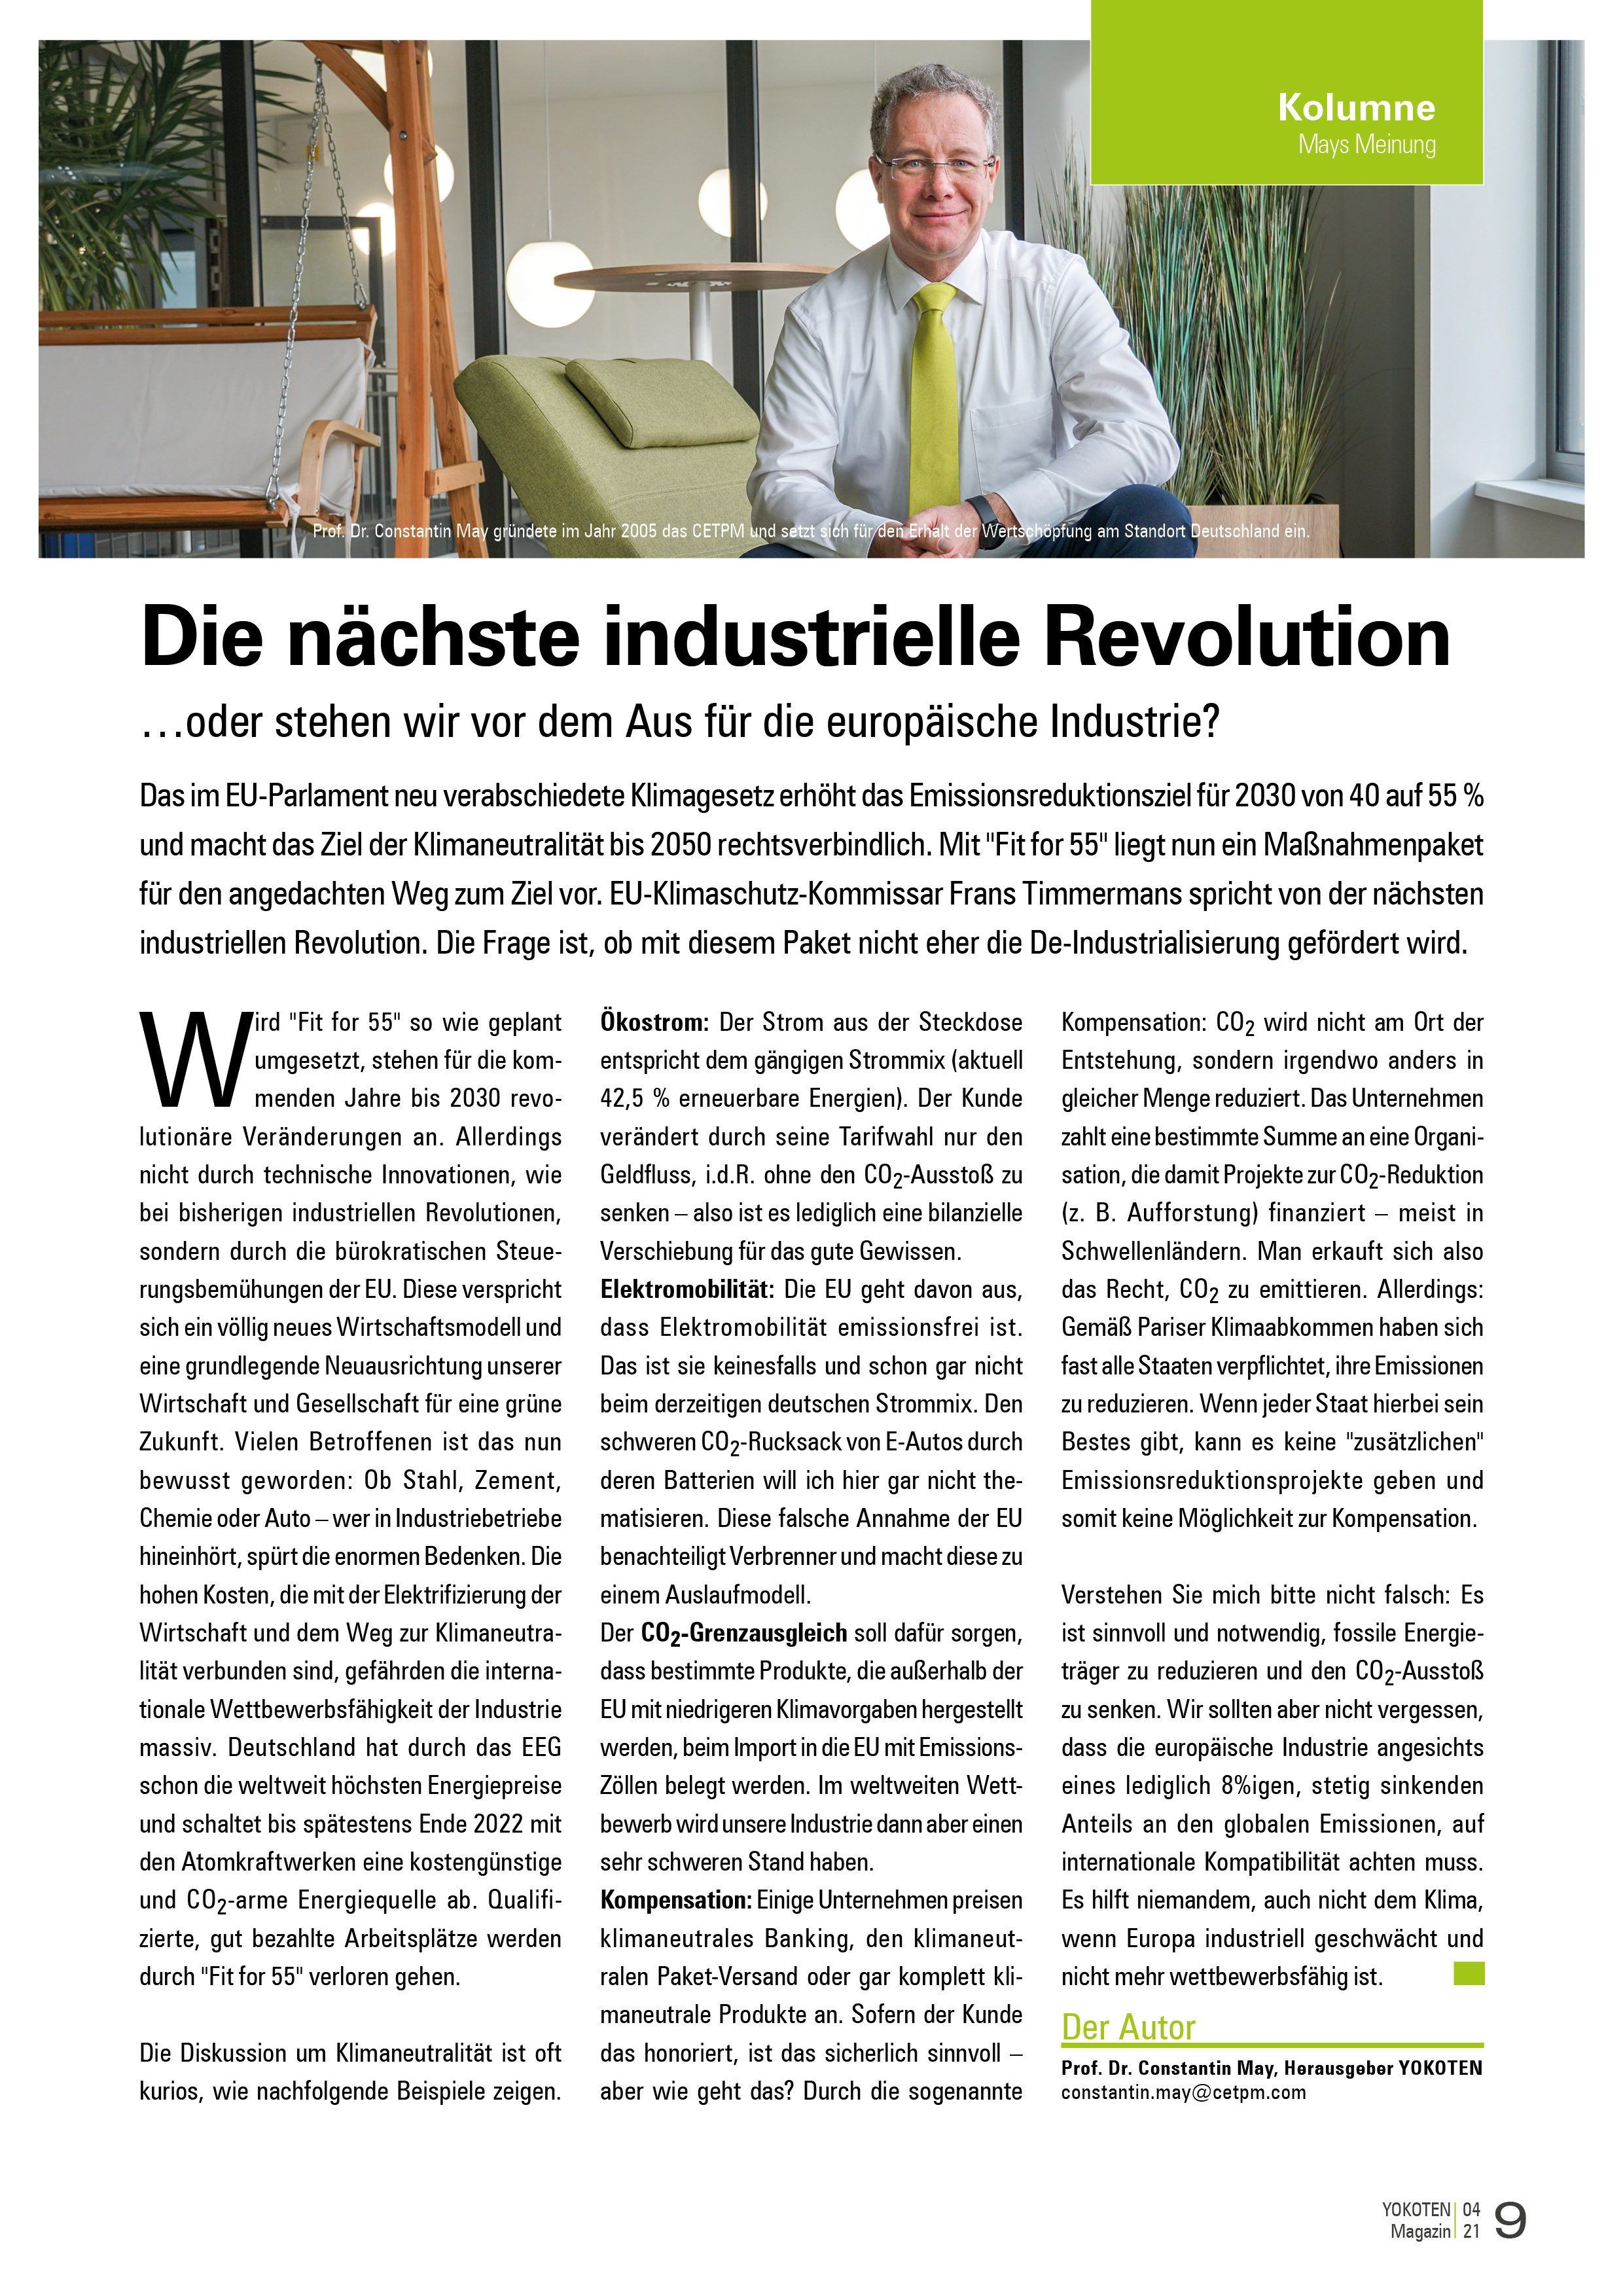 YOKOTEN-Artikel: Die nächste industrielle Revolution